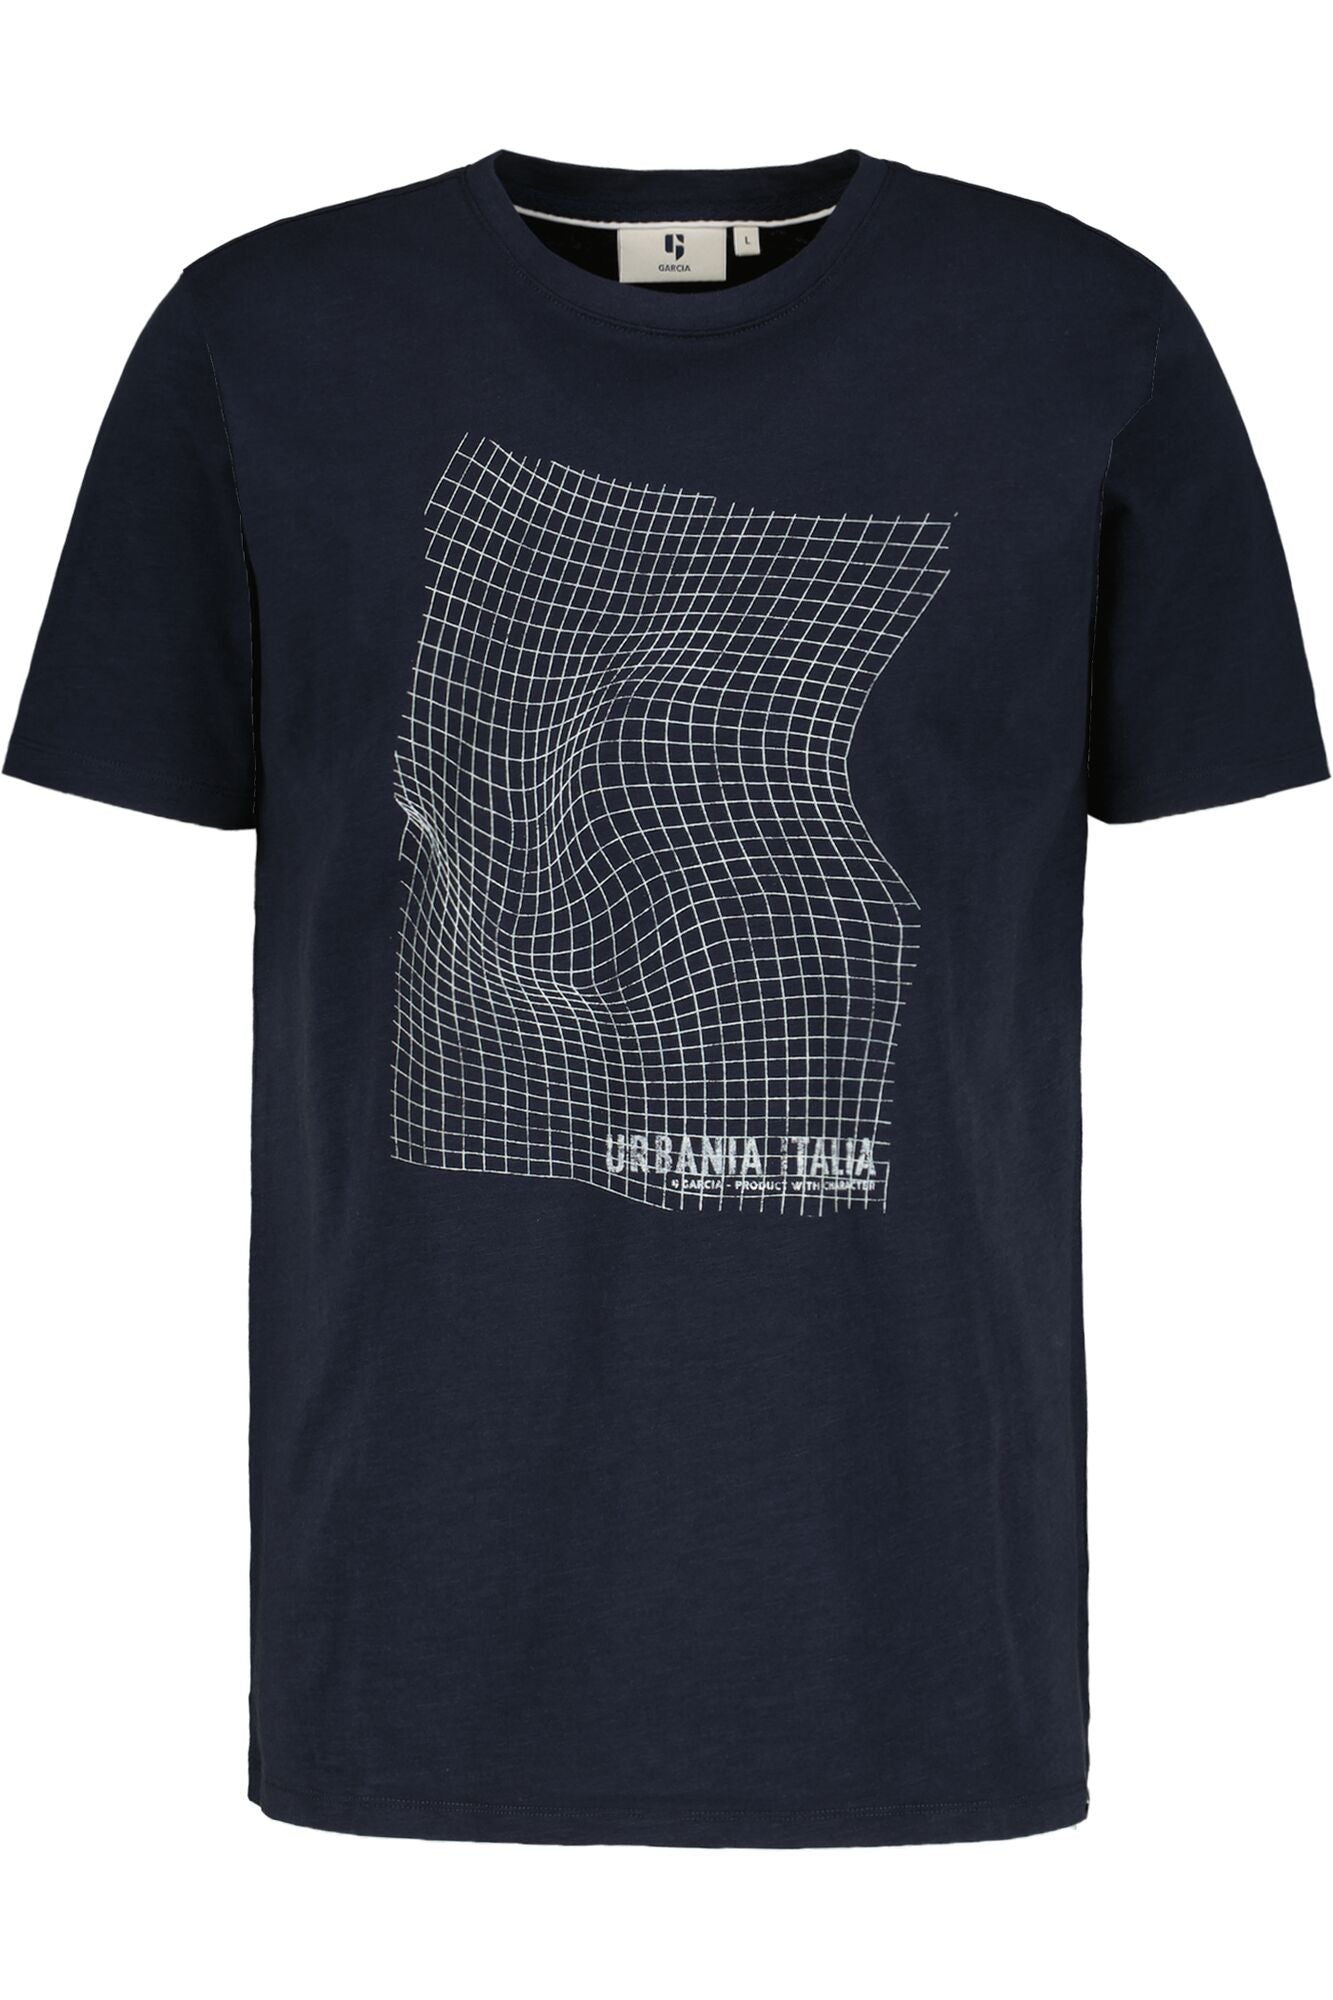 Garcia - Warped Grid T-Shirt - Dark Moon